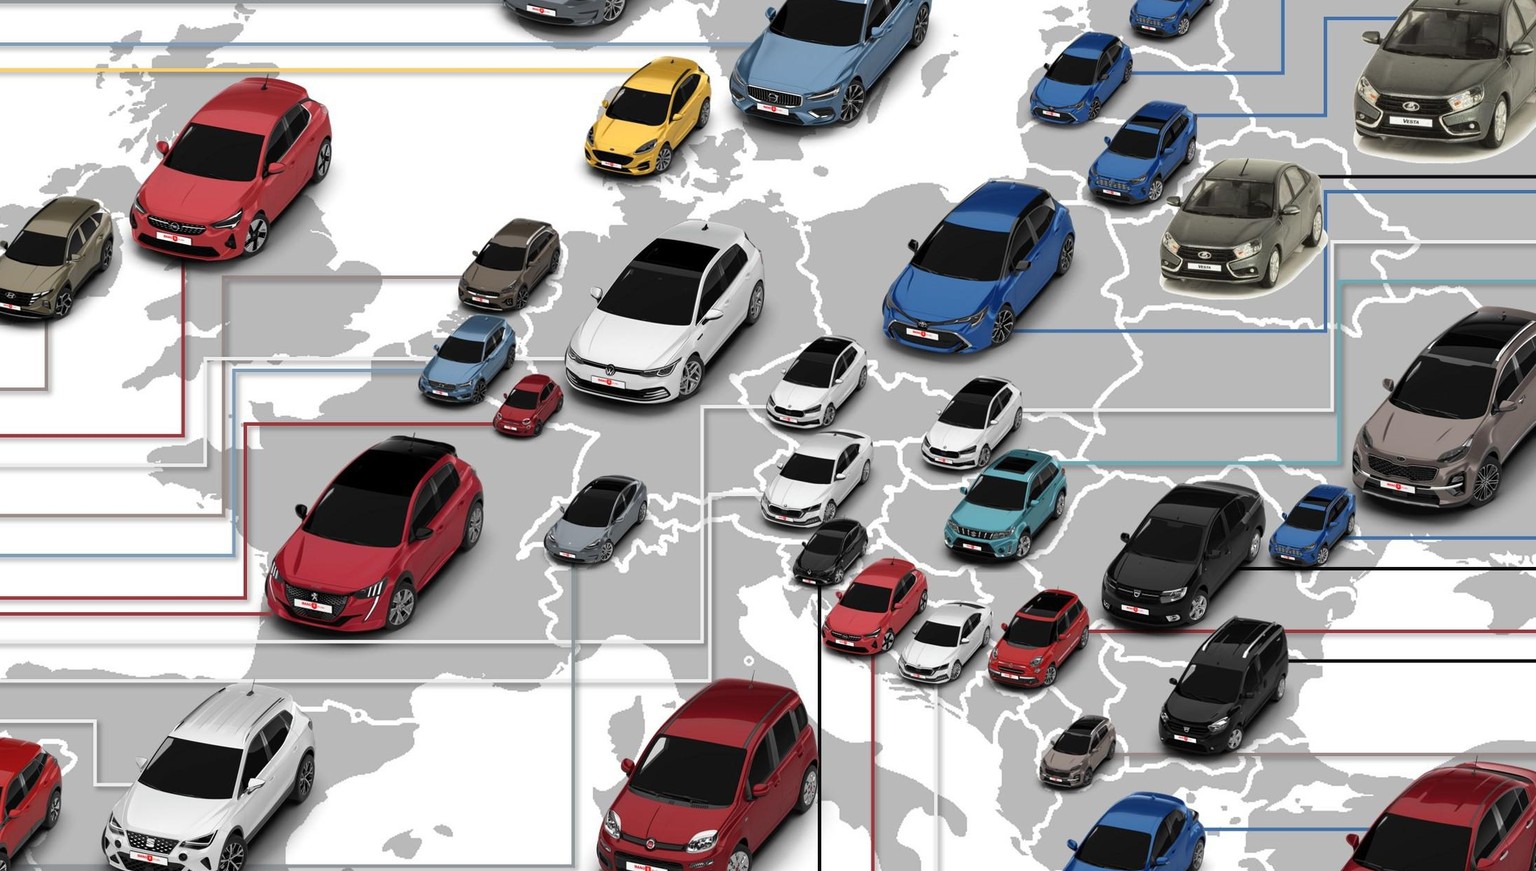 Das jeweils meistverkaufte Auto von 2021 in den europäischen Ländern (vollständige Grafik folgt im Artikel).